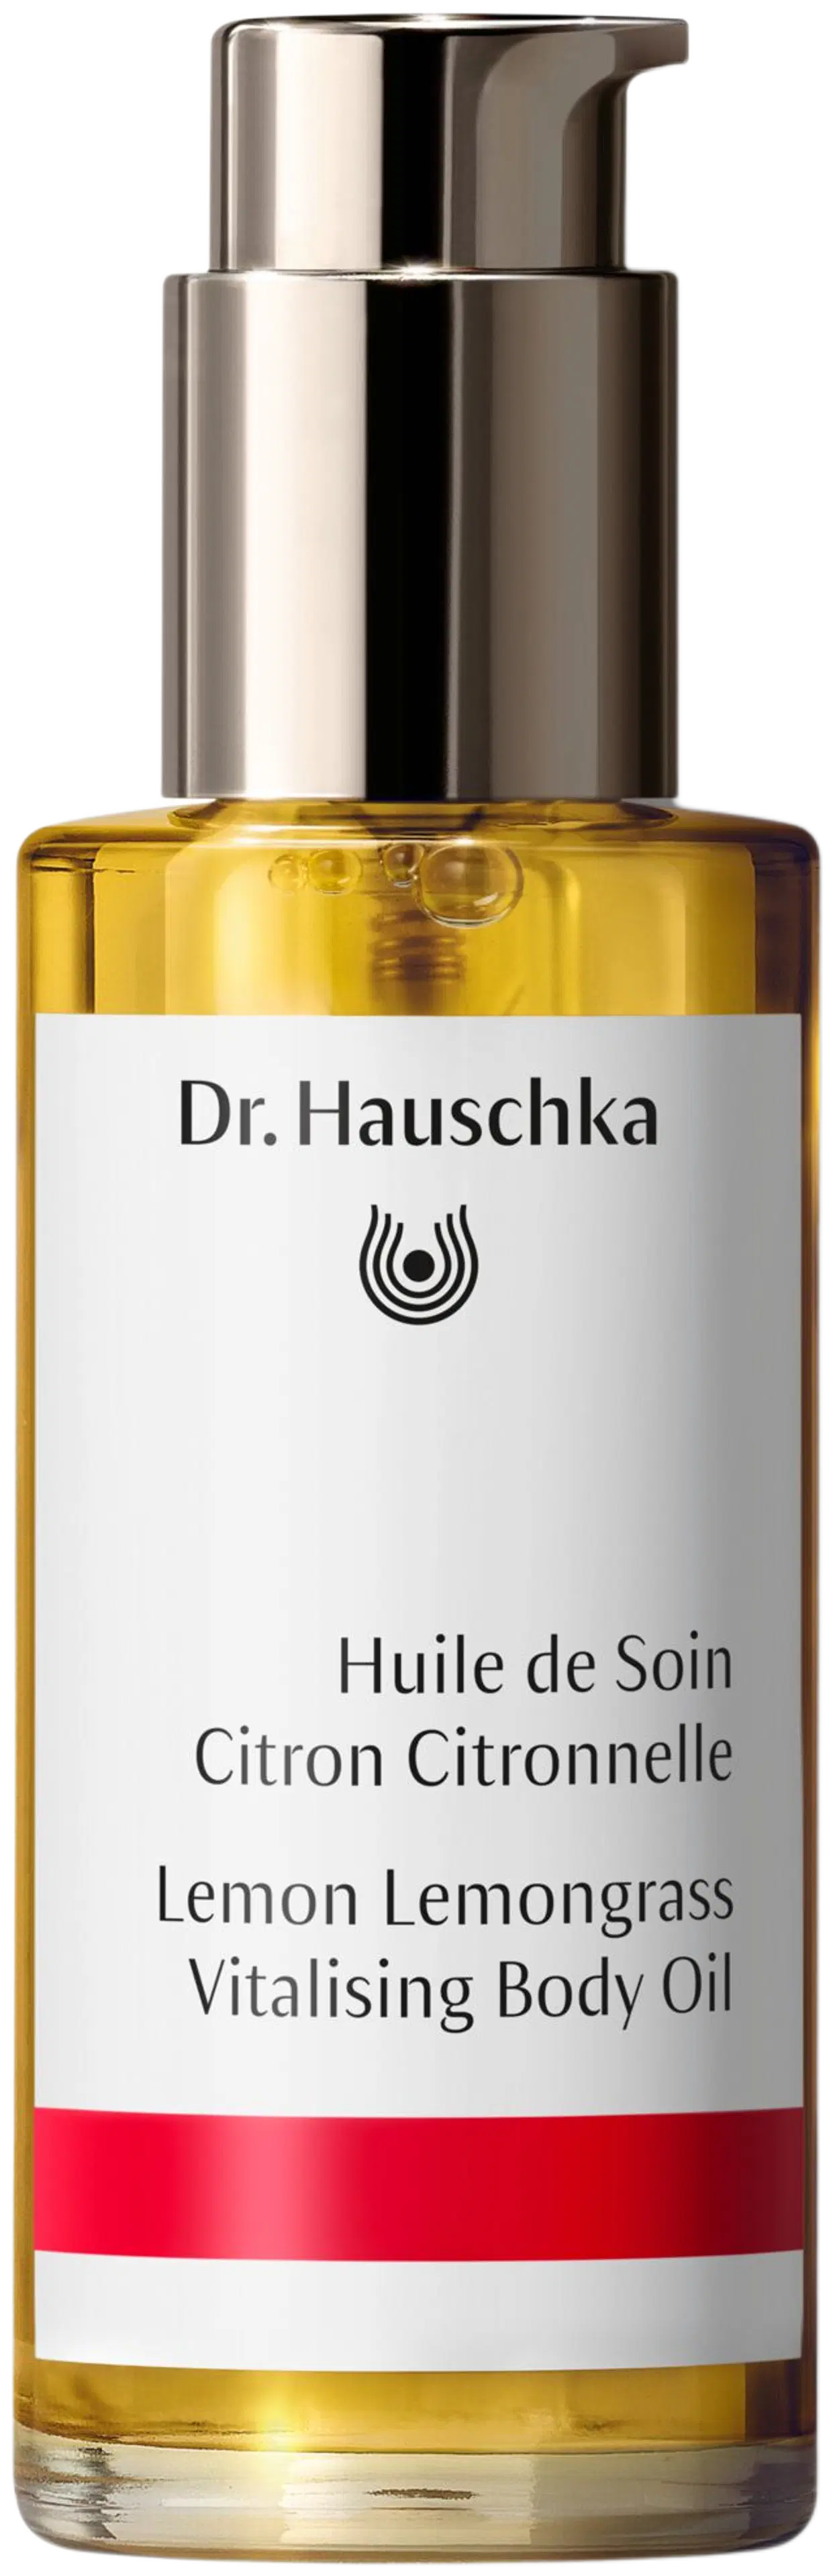 Dr. Hauschka Lemon Lemongrass Body Oil vartaloöljy 75 ml